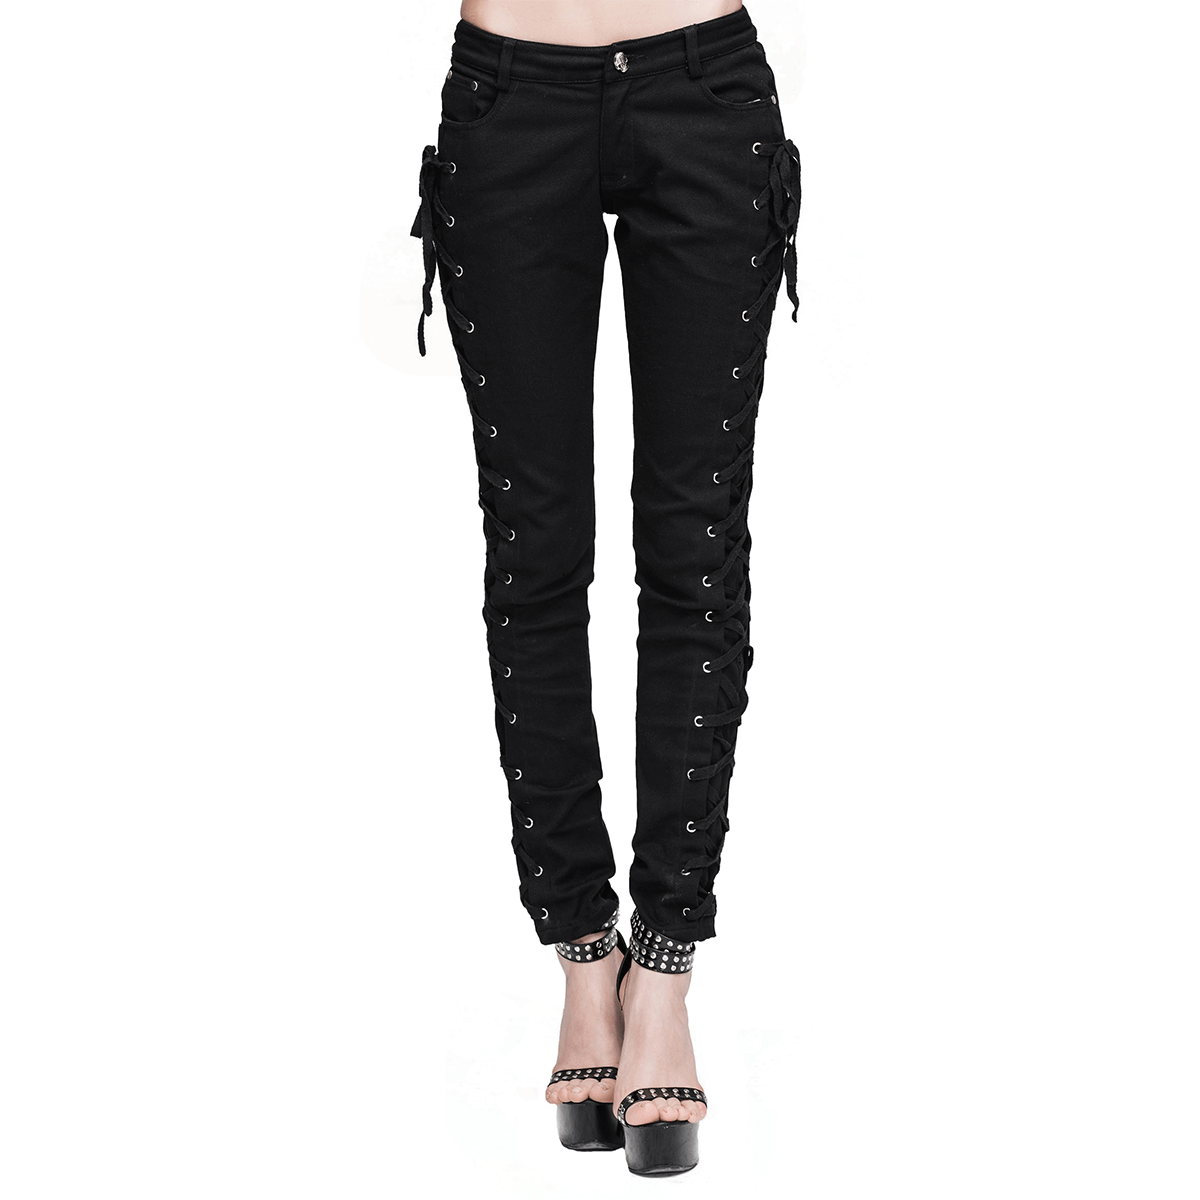 Lace Pants - Black - Ladies